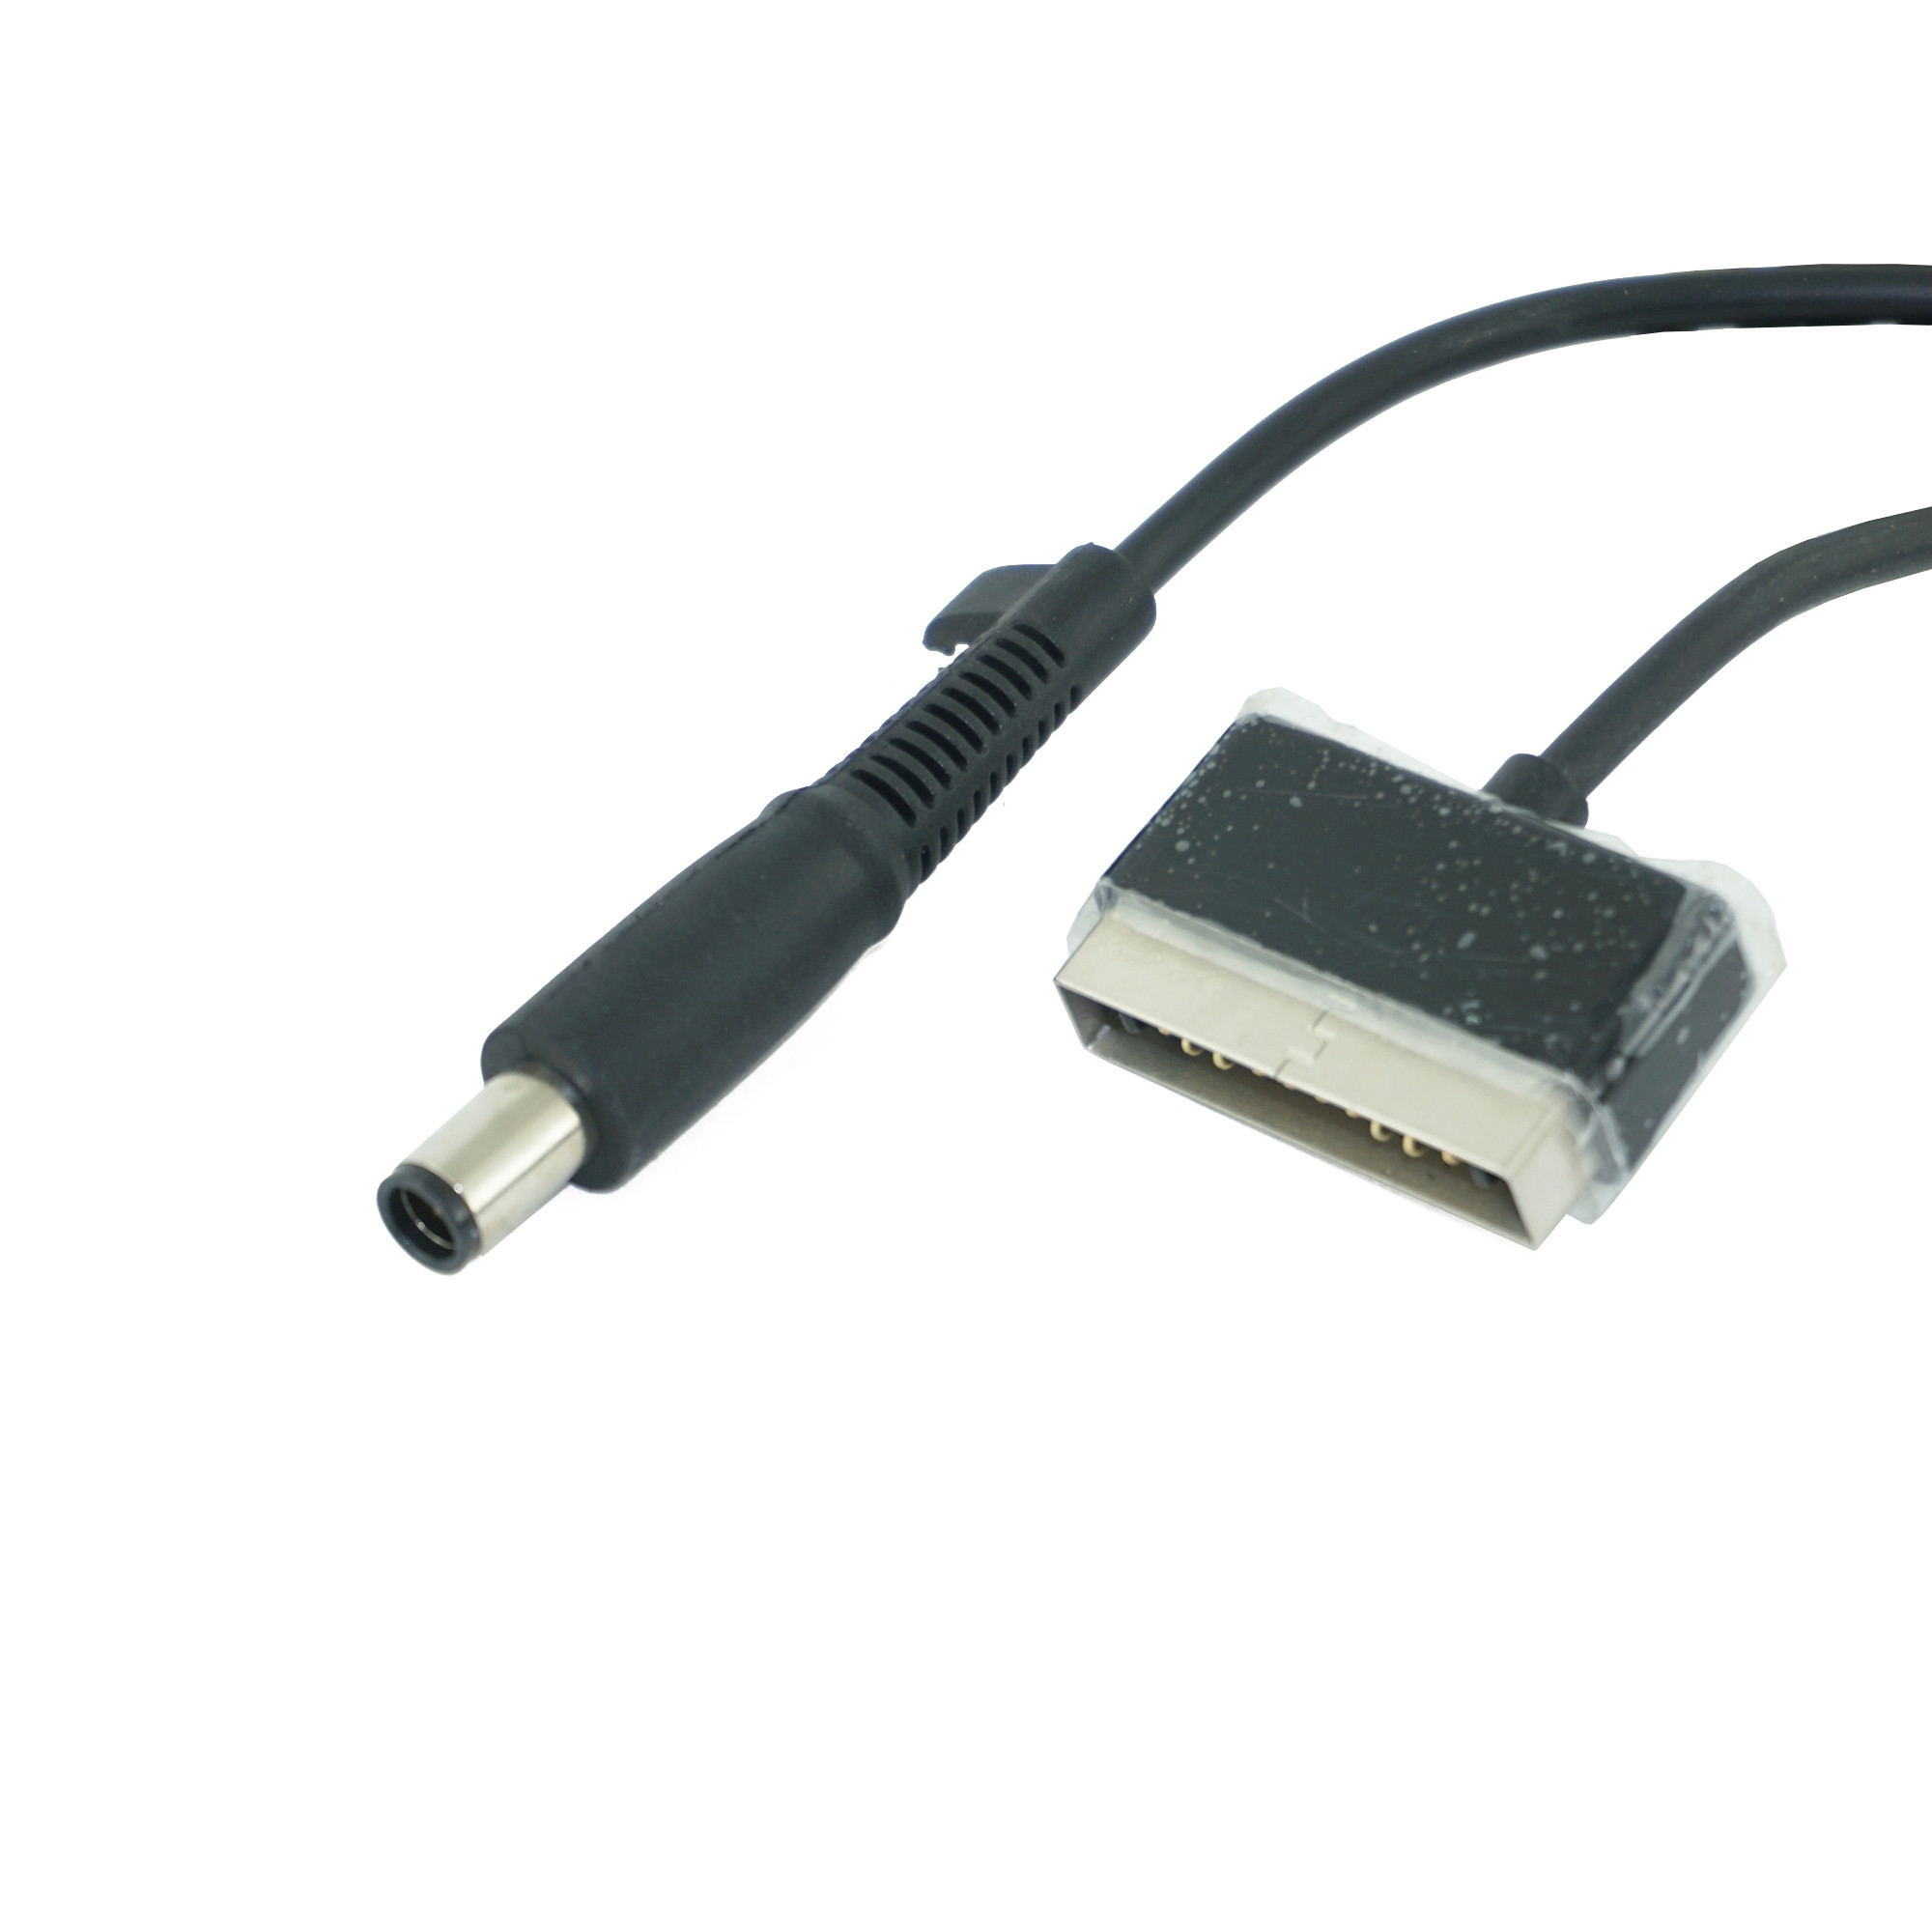 Купить блок питания для квадрокоптера DJI Phantom 4, A100 + USB (5V 2A)